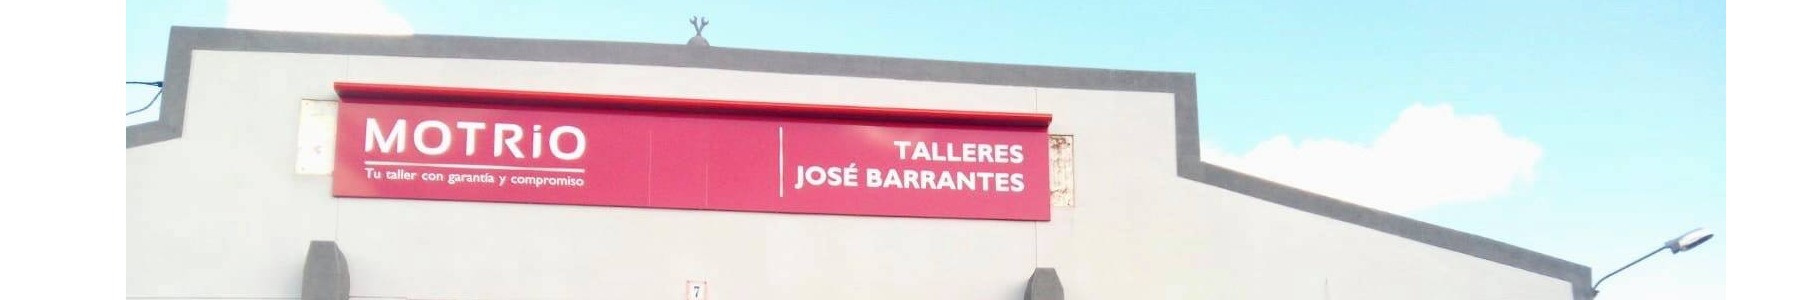 Automociones Jose Barrantes. Taller